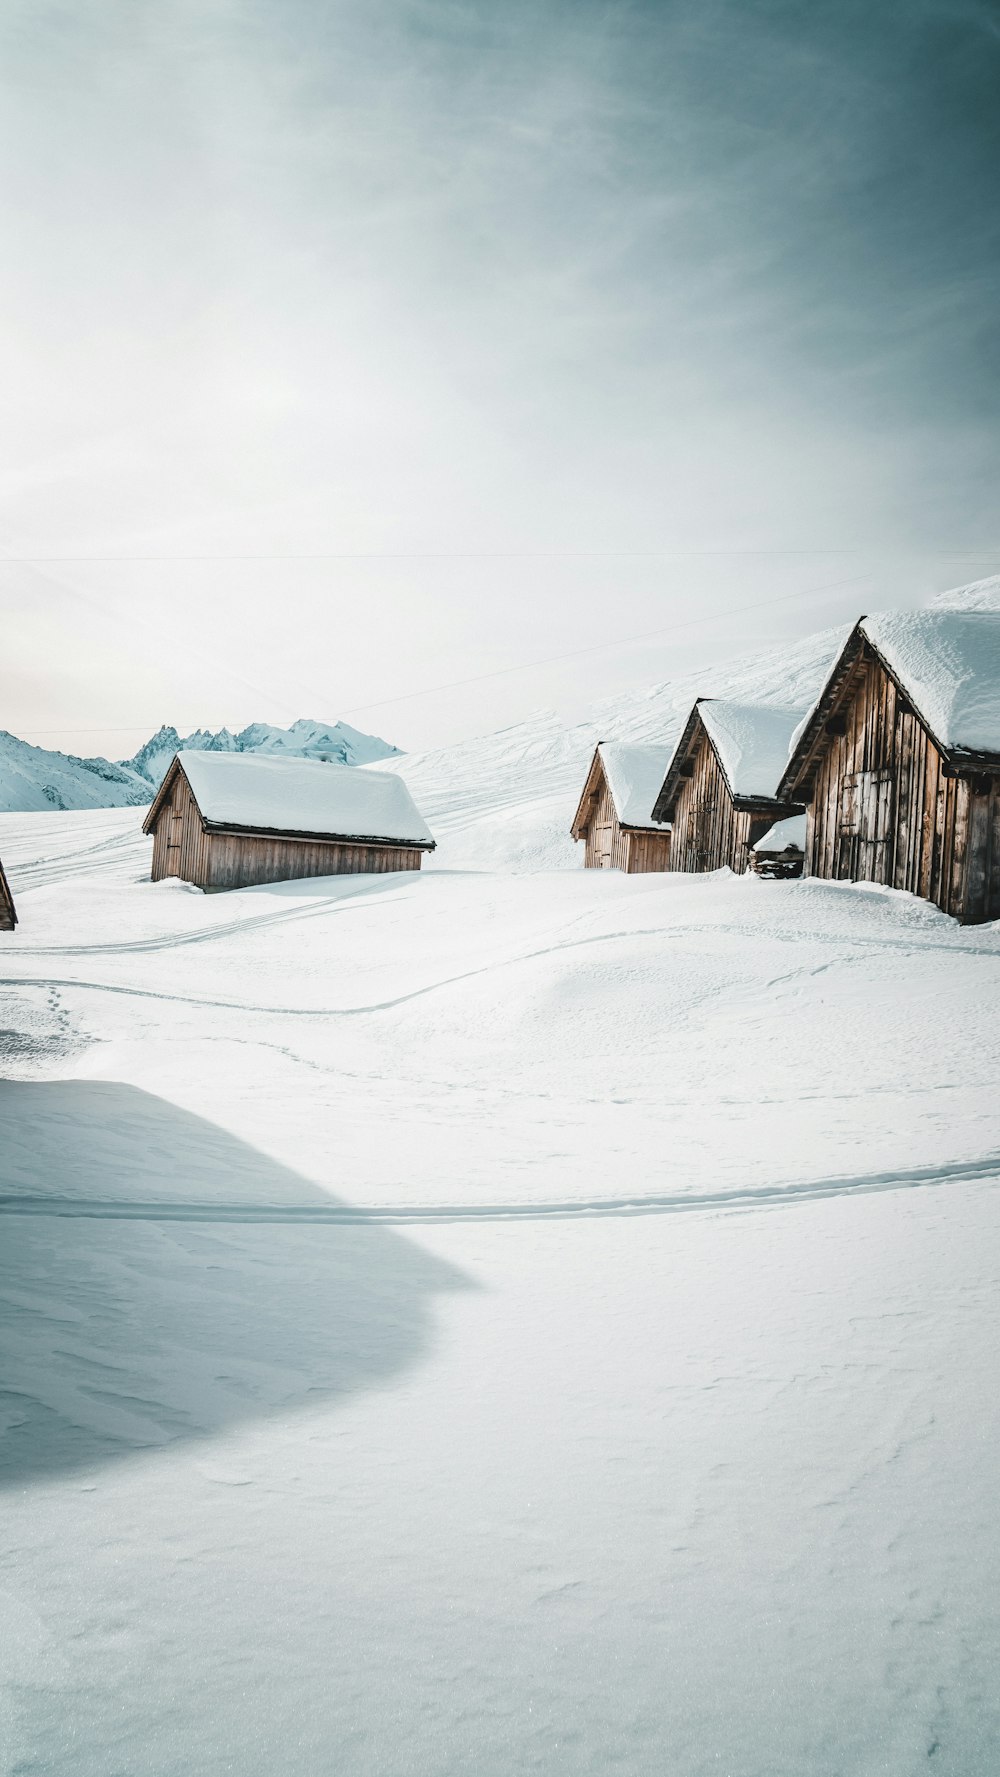 Casa de madera marrón en suelo cubierto de nieve